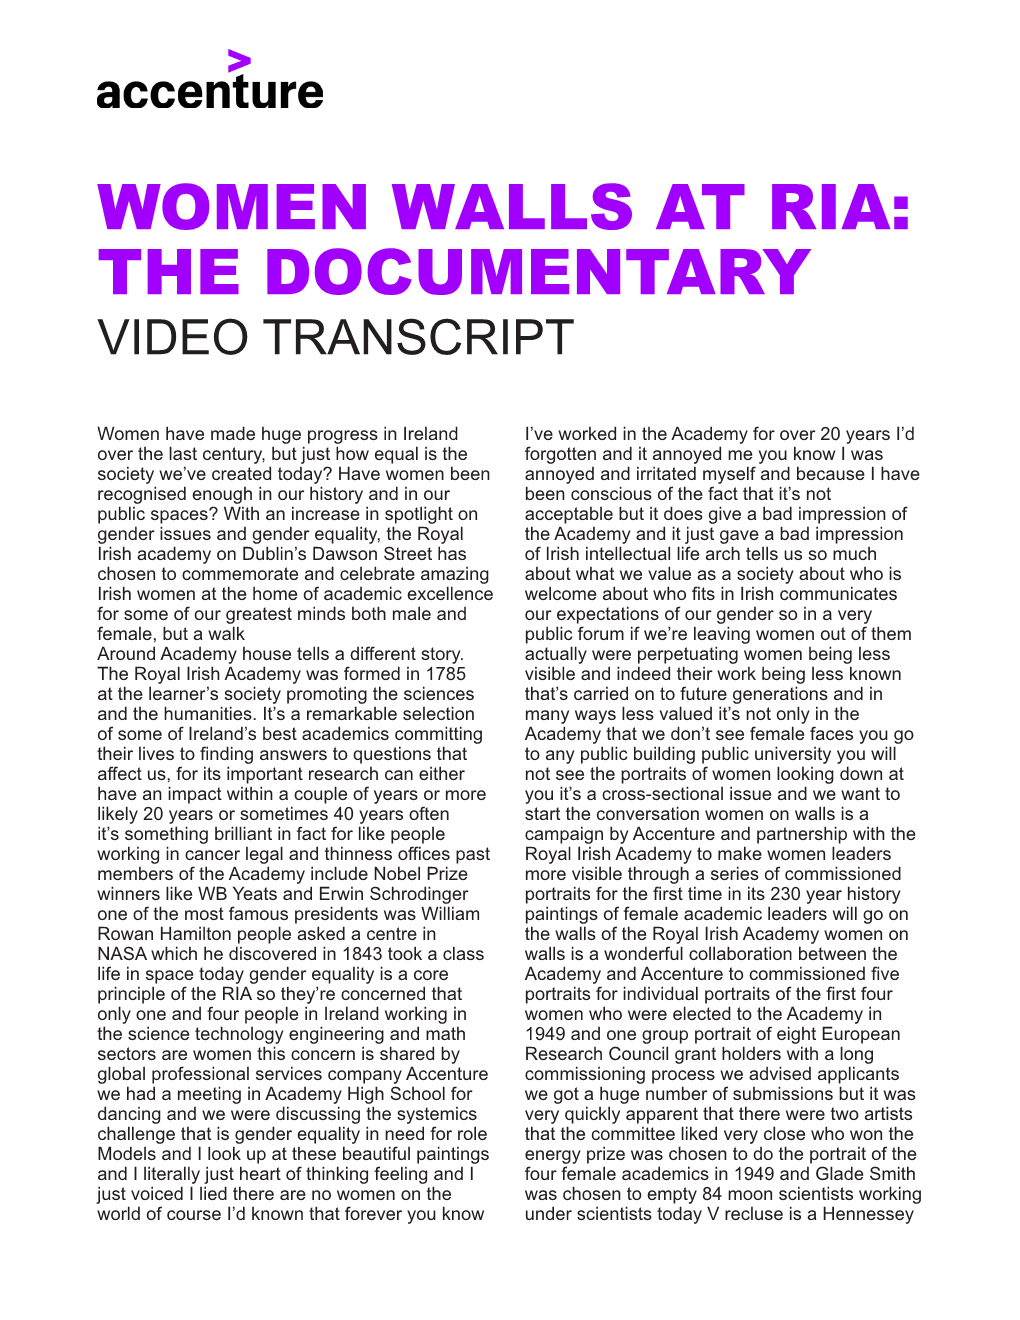 Video Transcript: Women Walls at RIA | Accenture